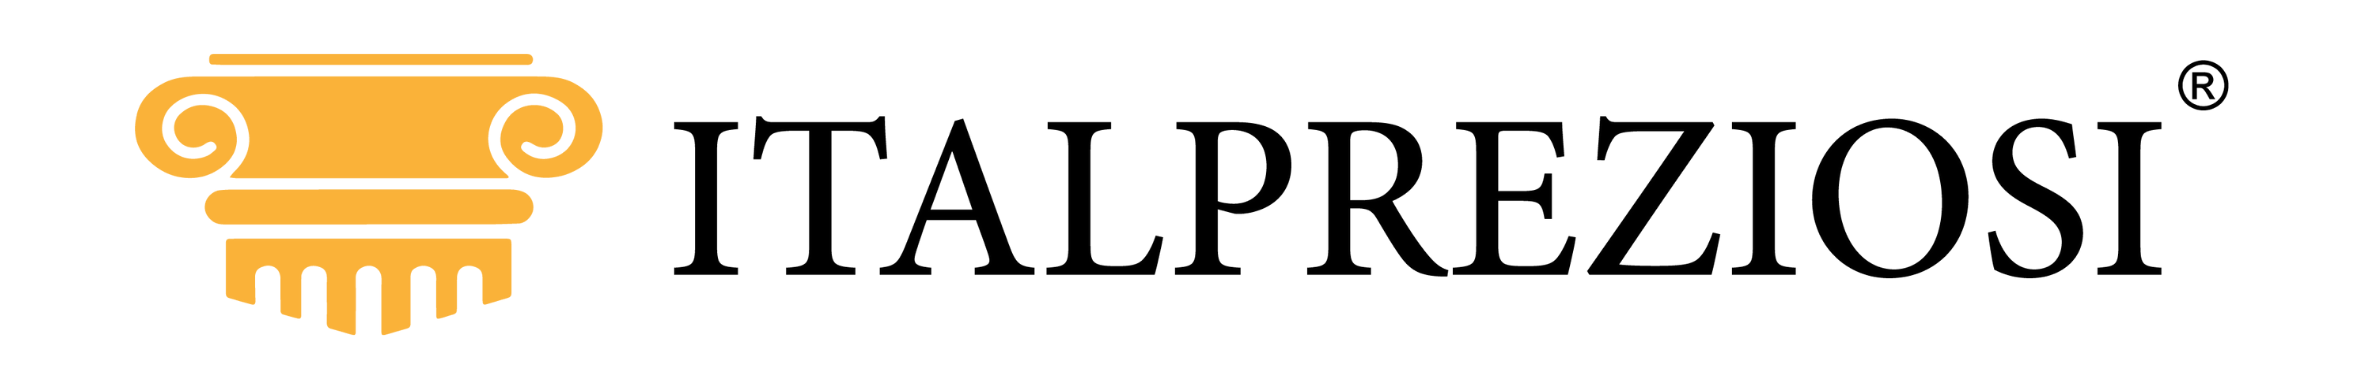 italpreziosi logo